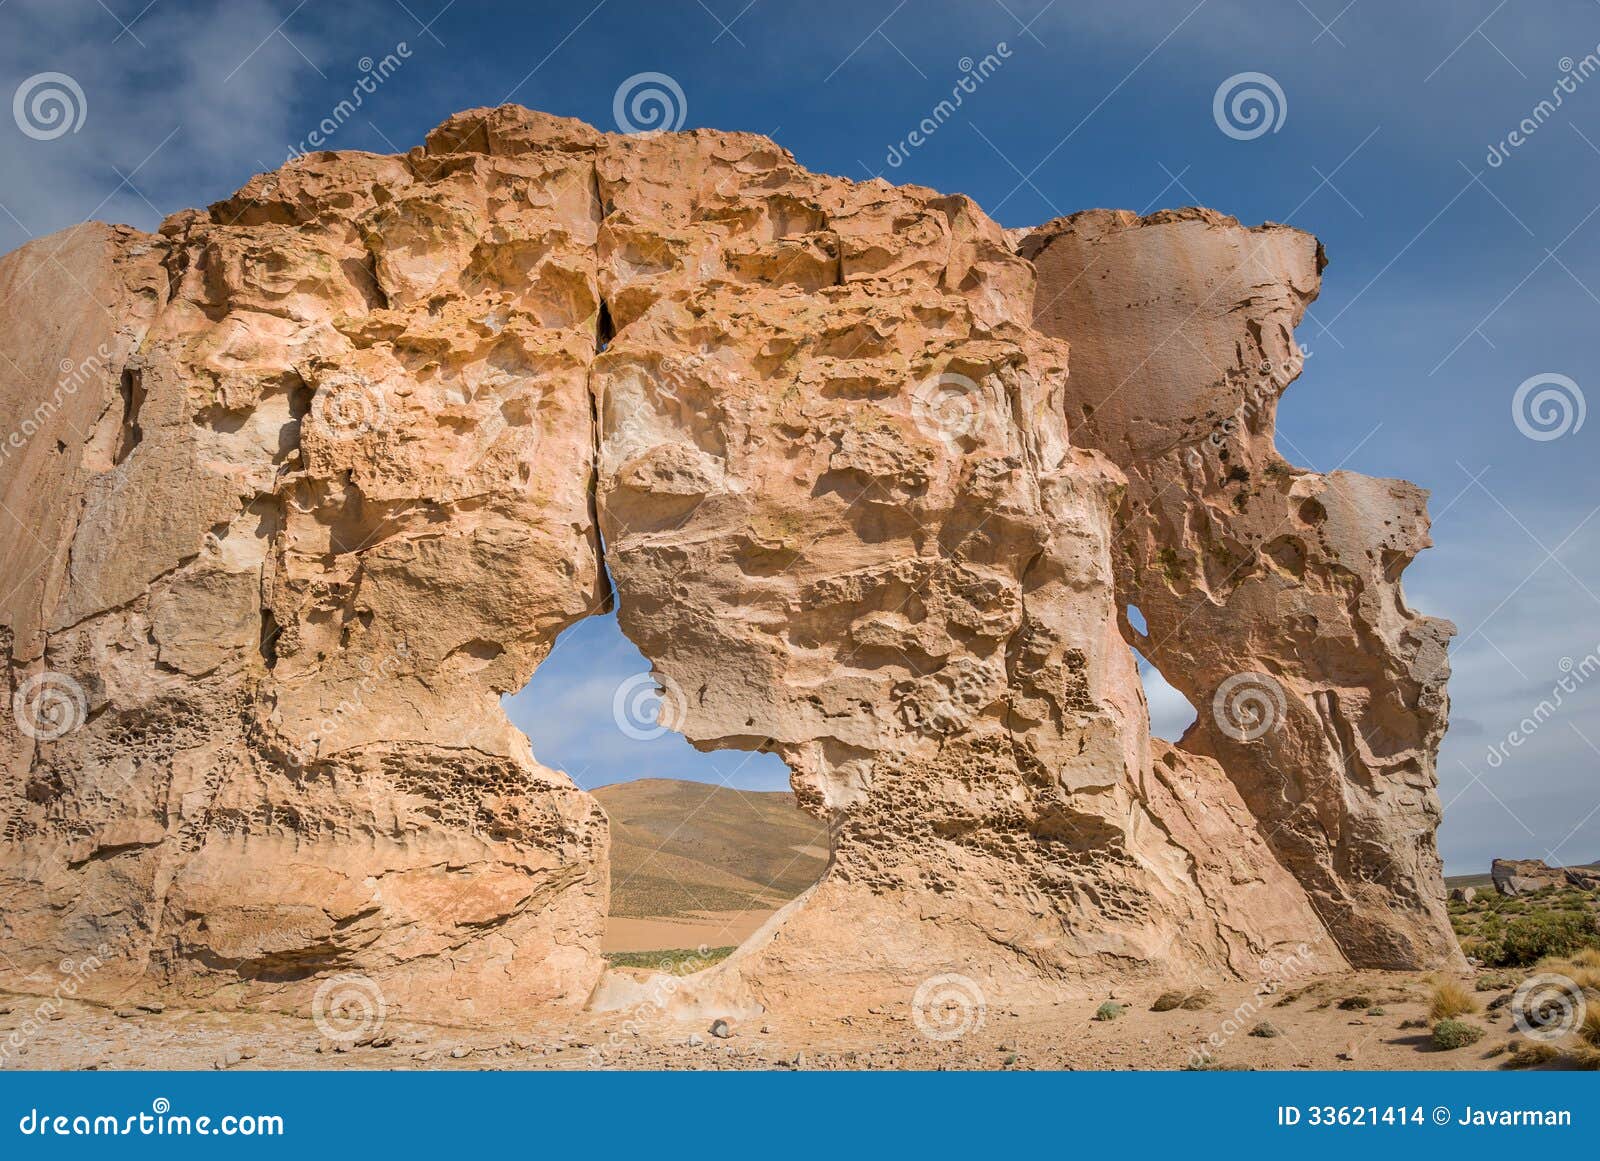 valle de rocas rock formations, altiplano bolivia